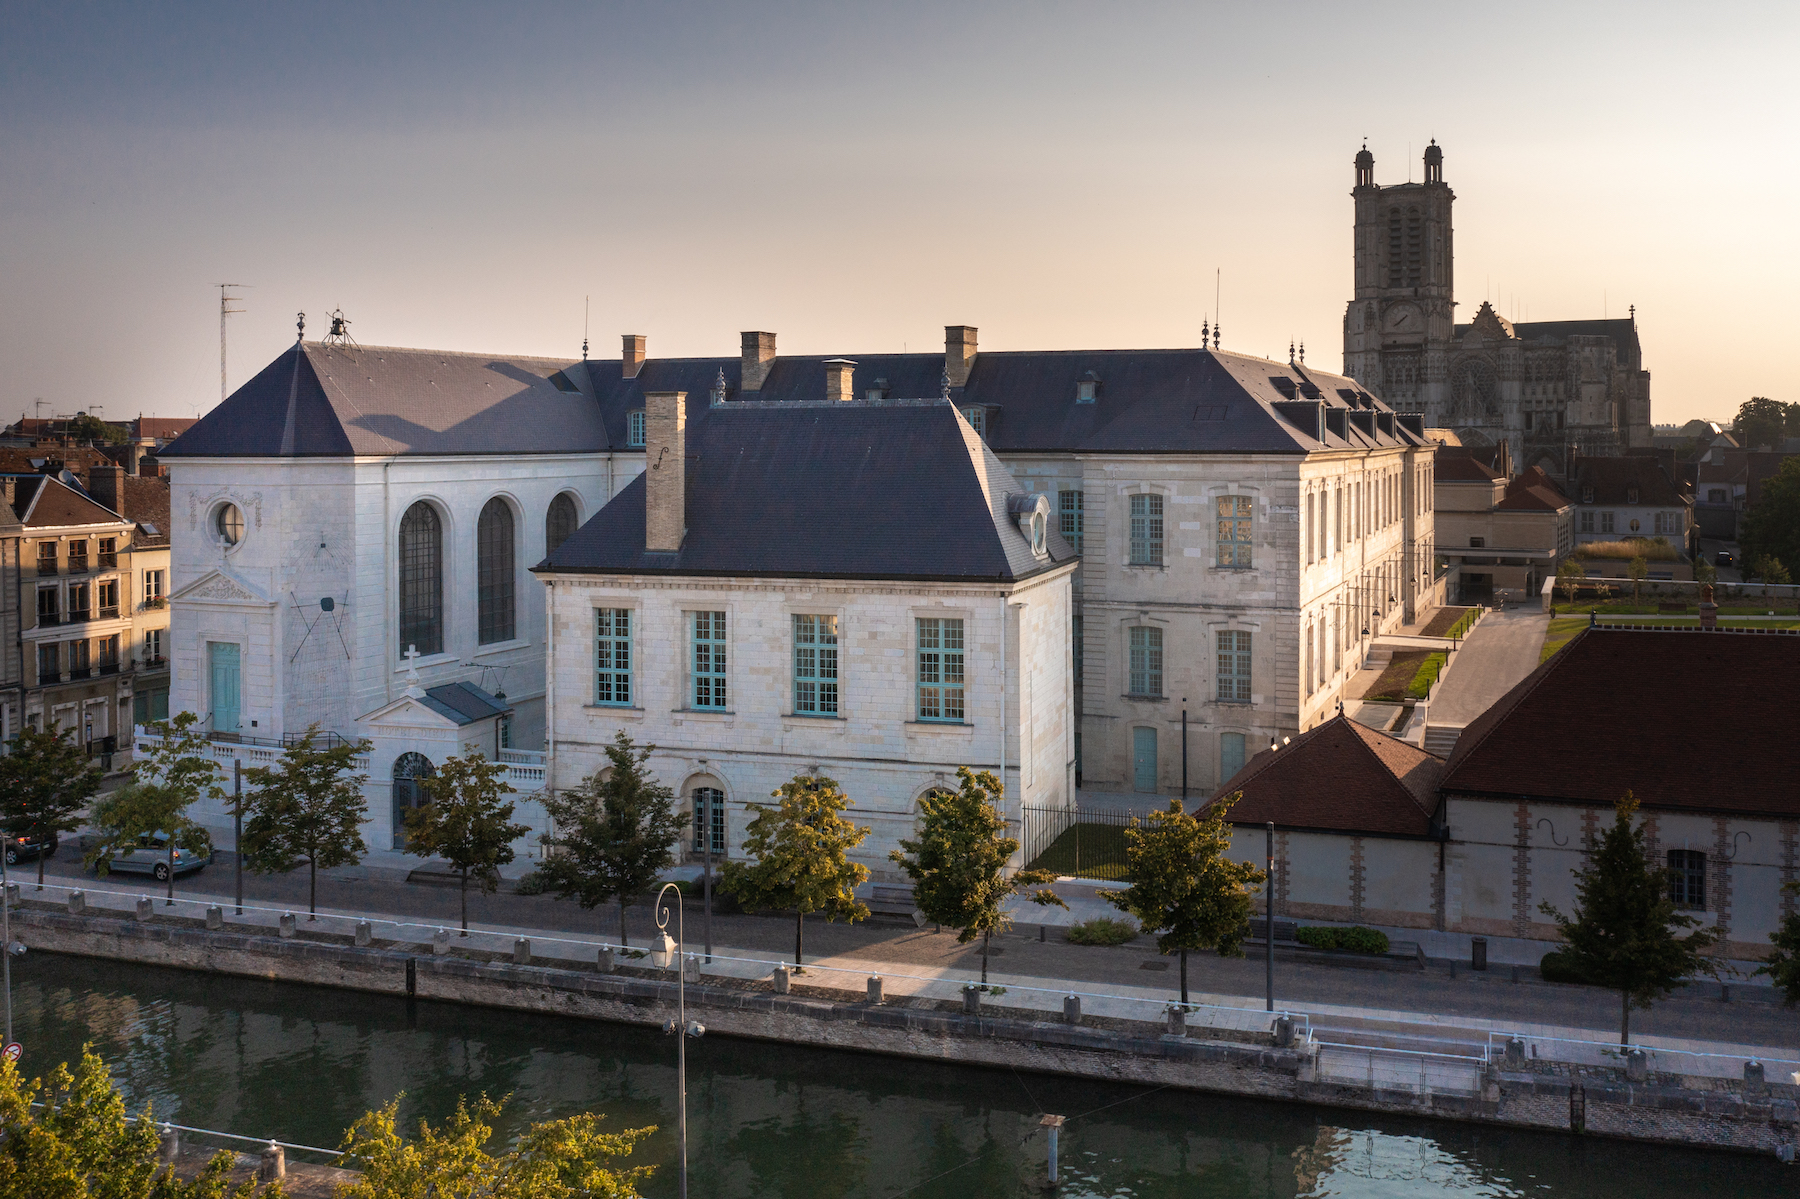 Rare édifice en pierre de taille du XVIIIe siècle présent dans le centre-ville de Troyes, l’Hôtel-Dieu-le-Comte a été remarquablement restauré. © Studio OG